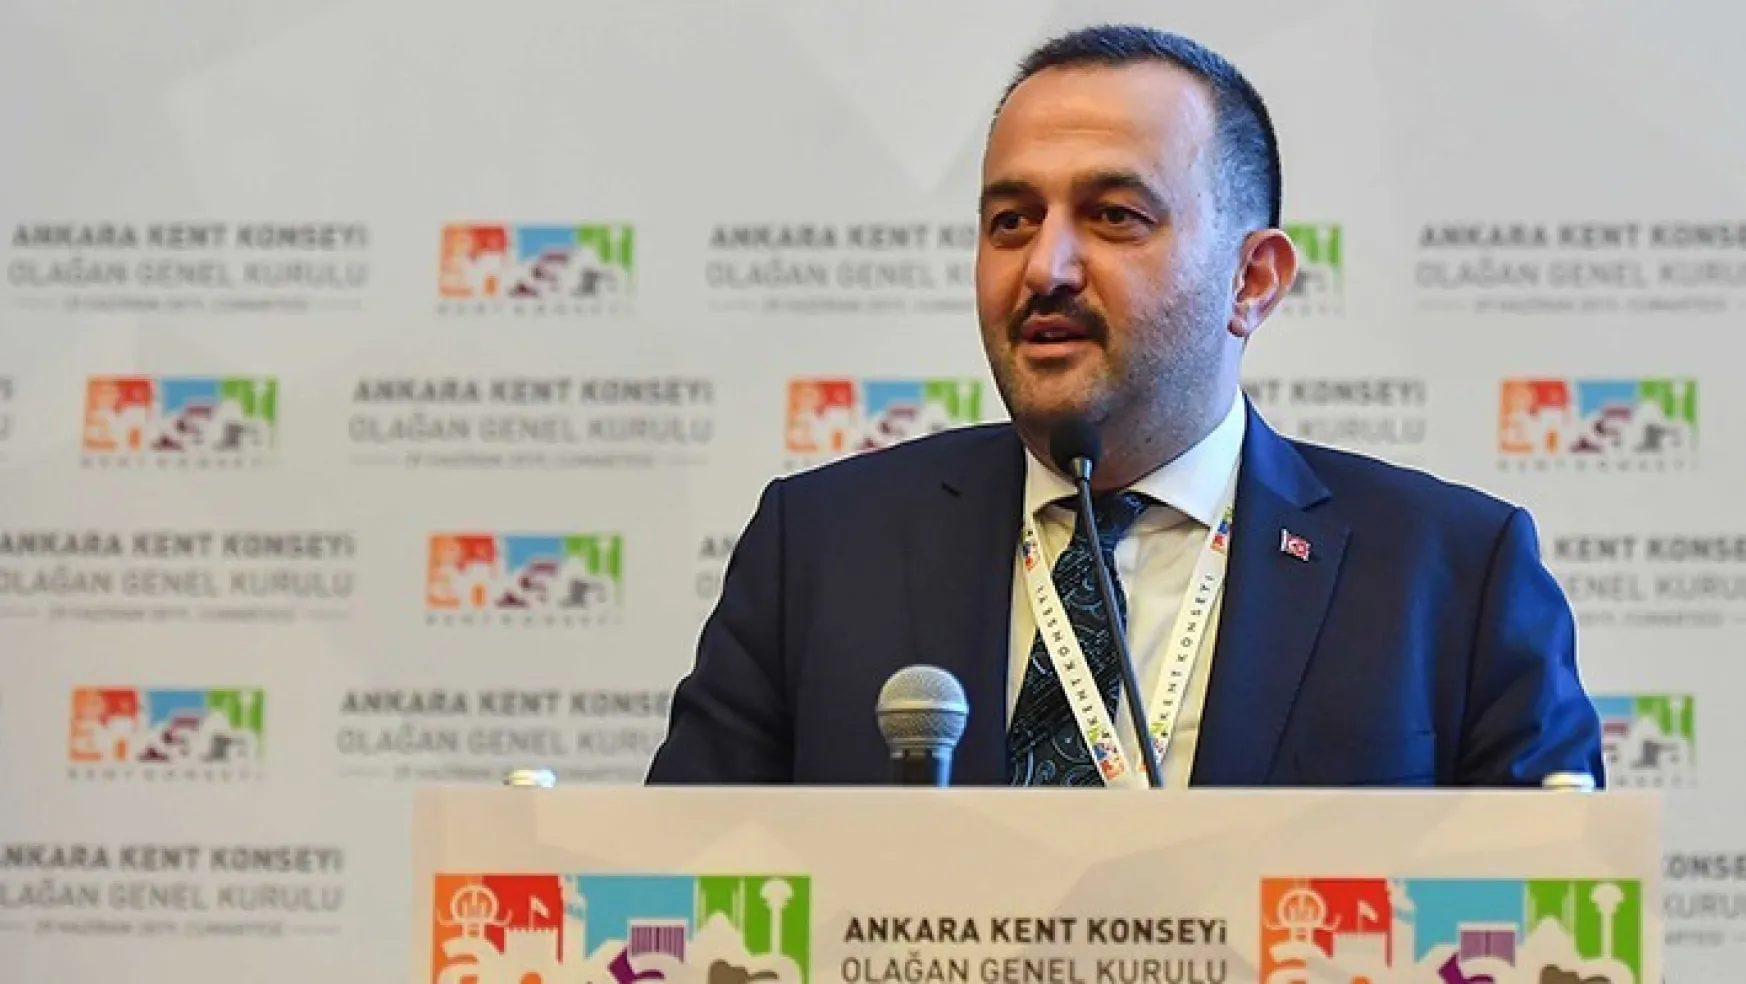 Ankara Kent Konseyi Başkanı'nı Seçti